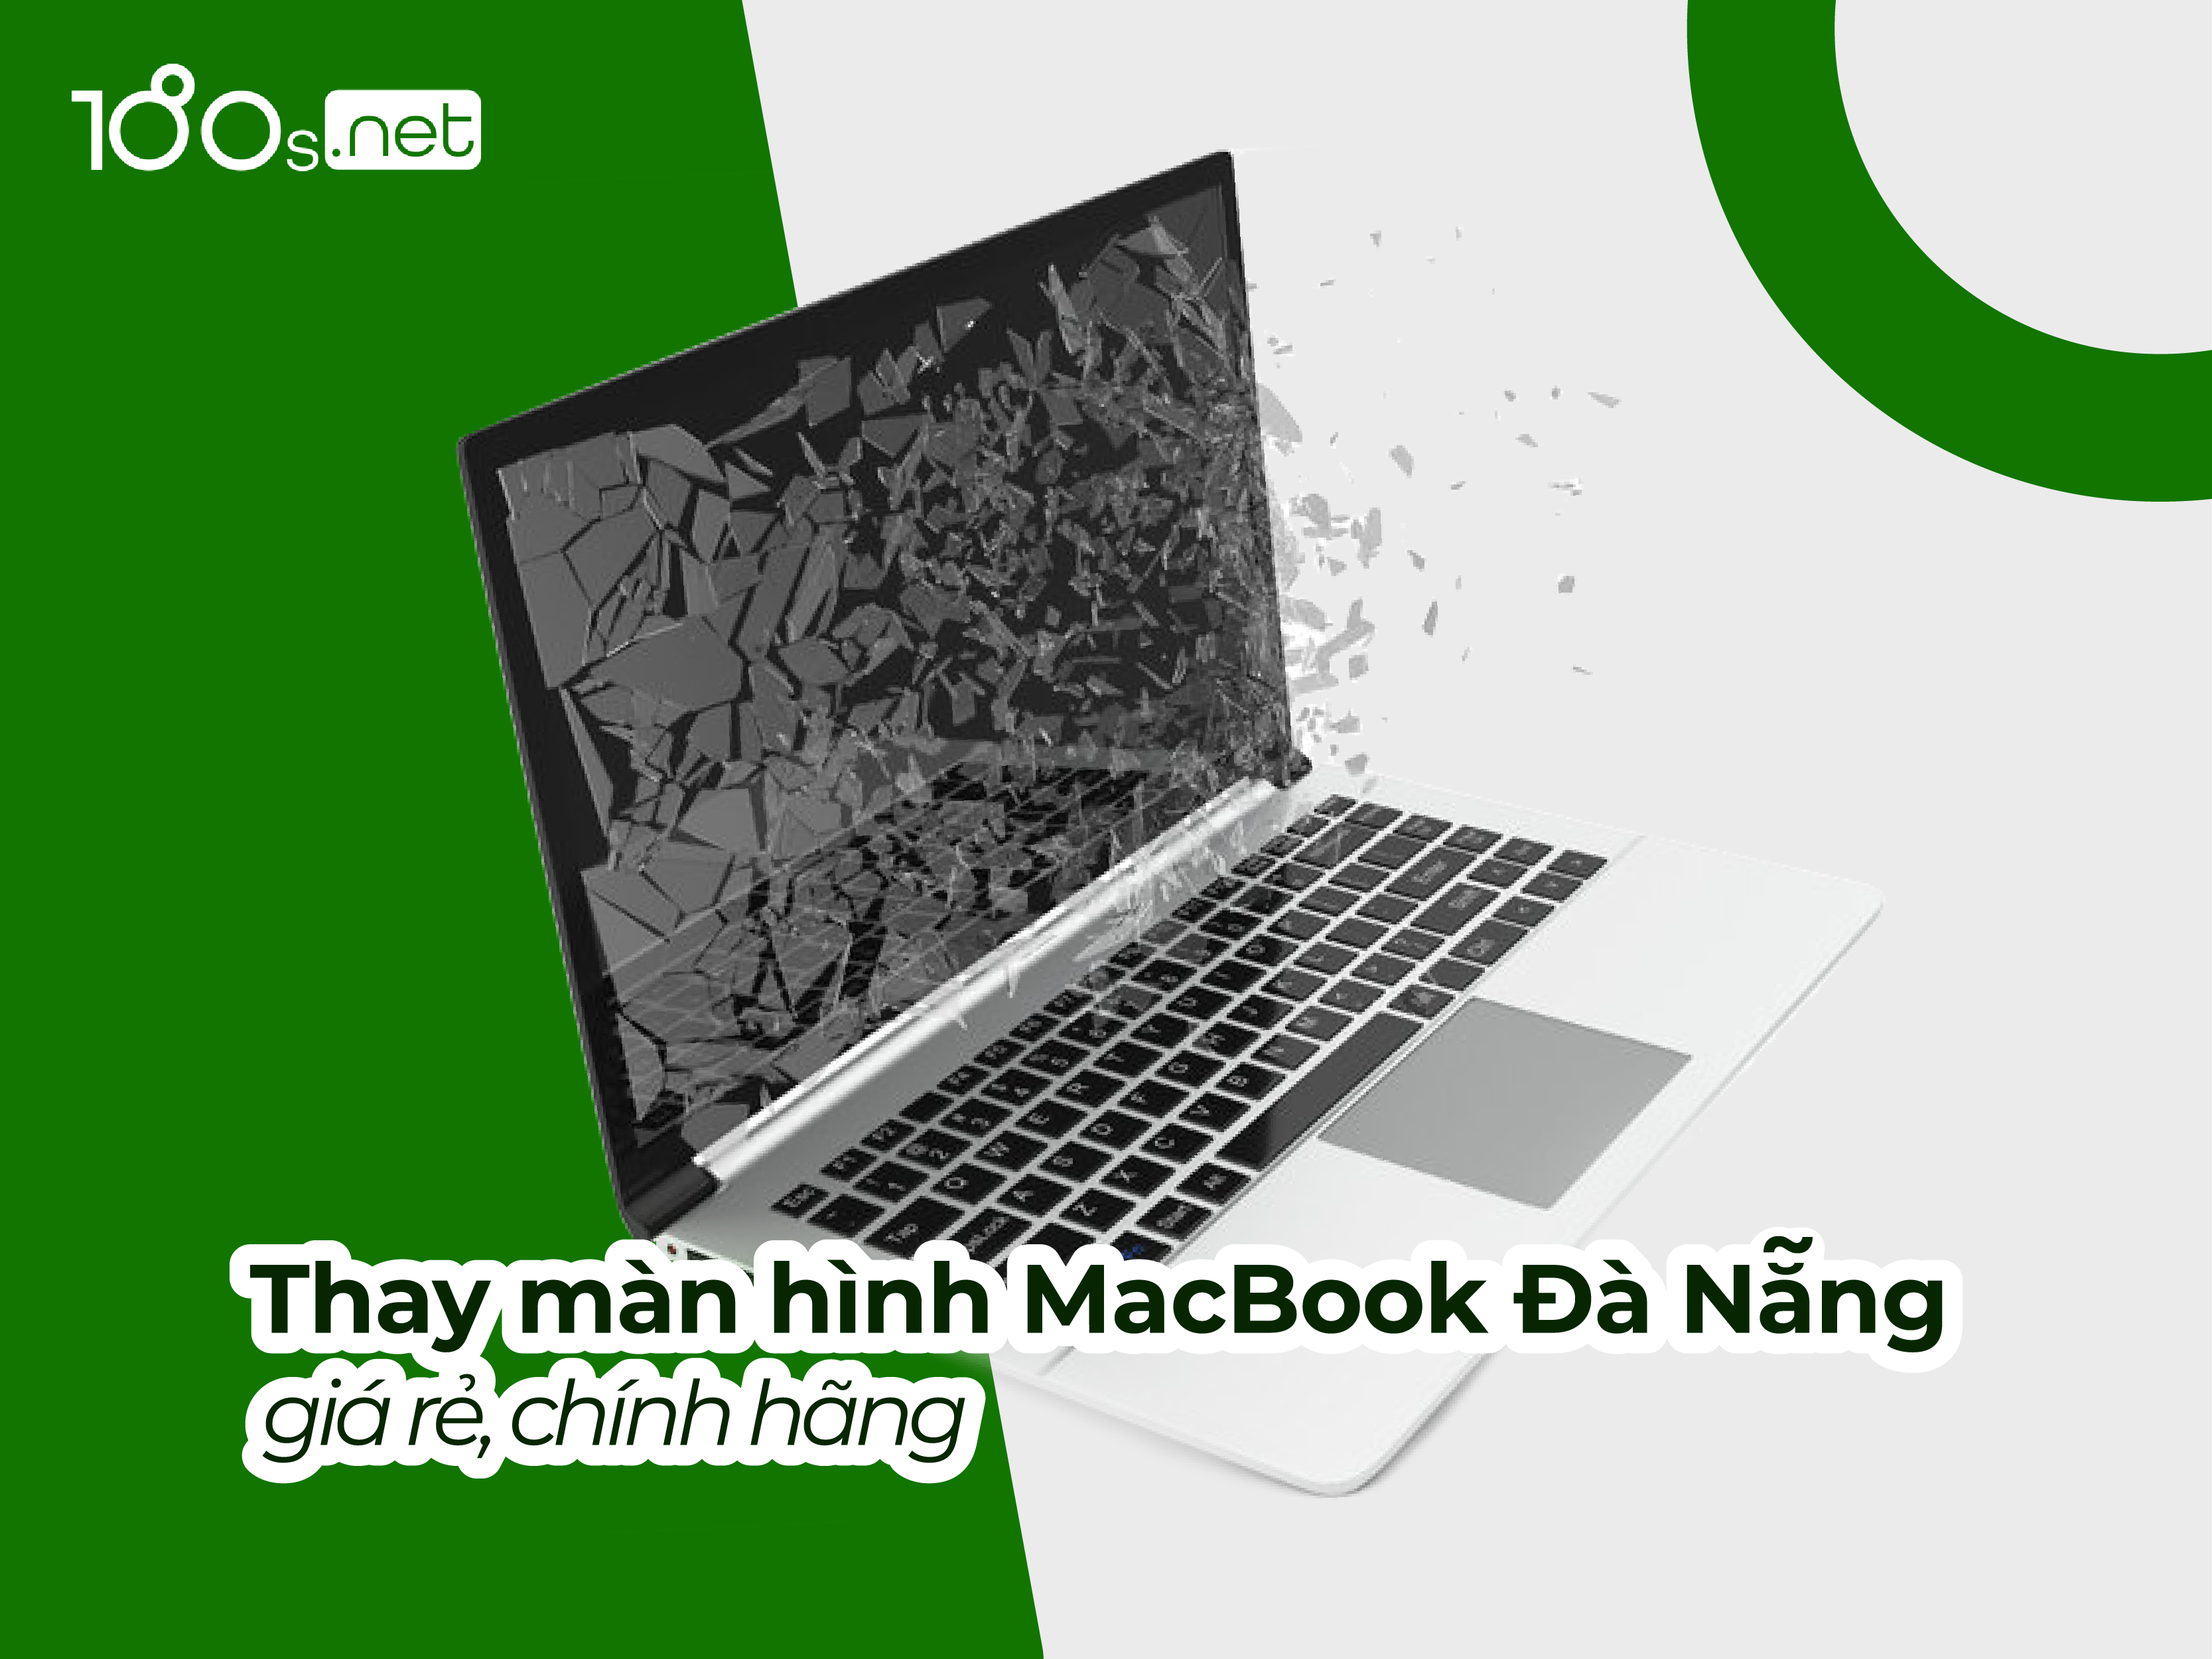 Thay màn hình macbook Đà Nẵng giá rẻ, chính hãng